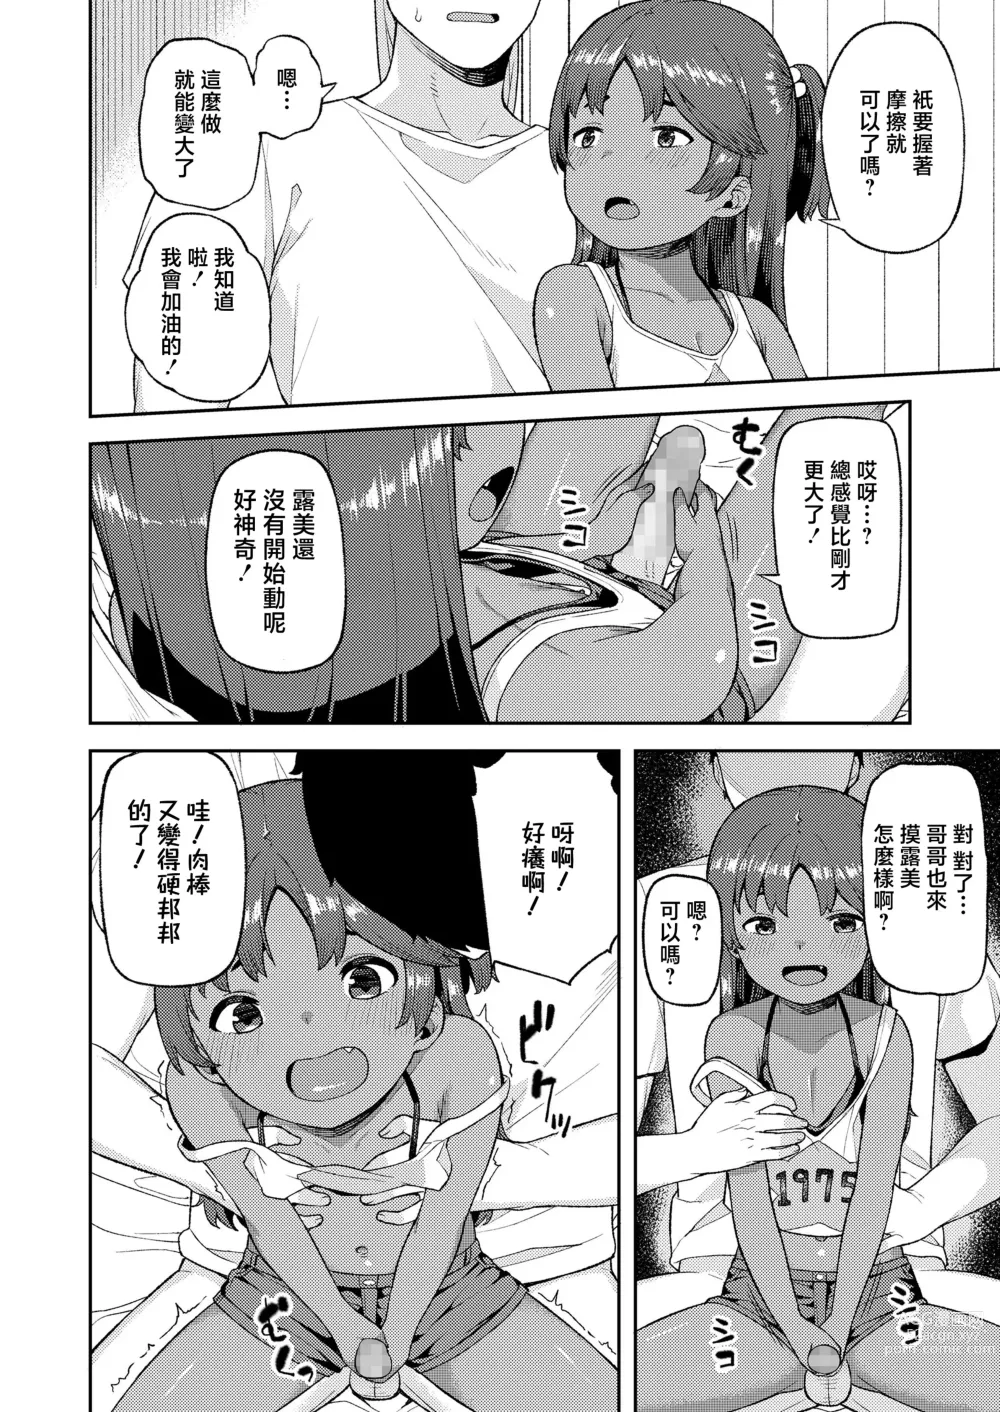 Page 4 of manga Aka-chan Tsukuri no Yoshuu